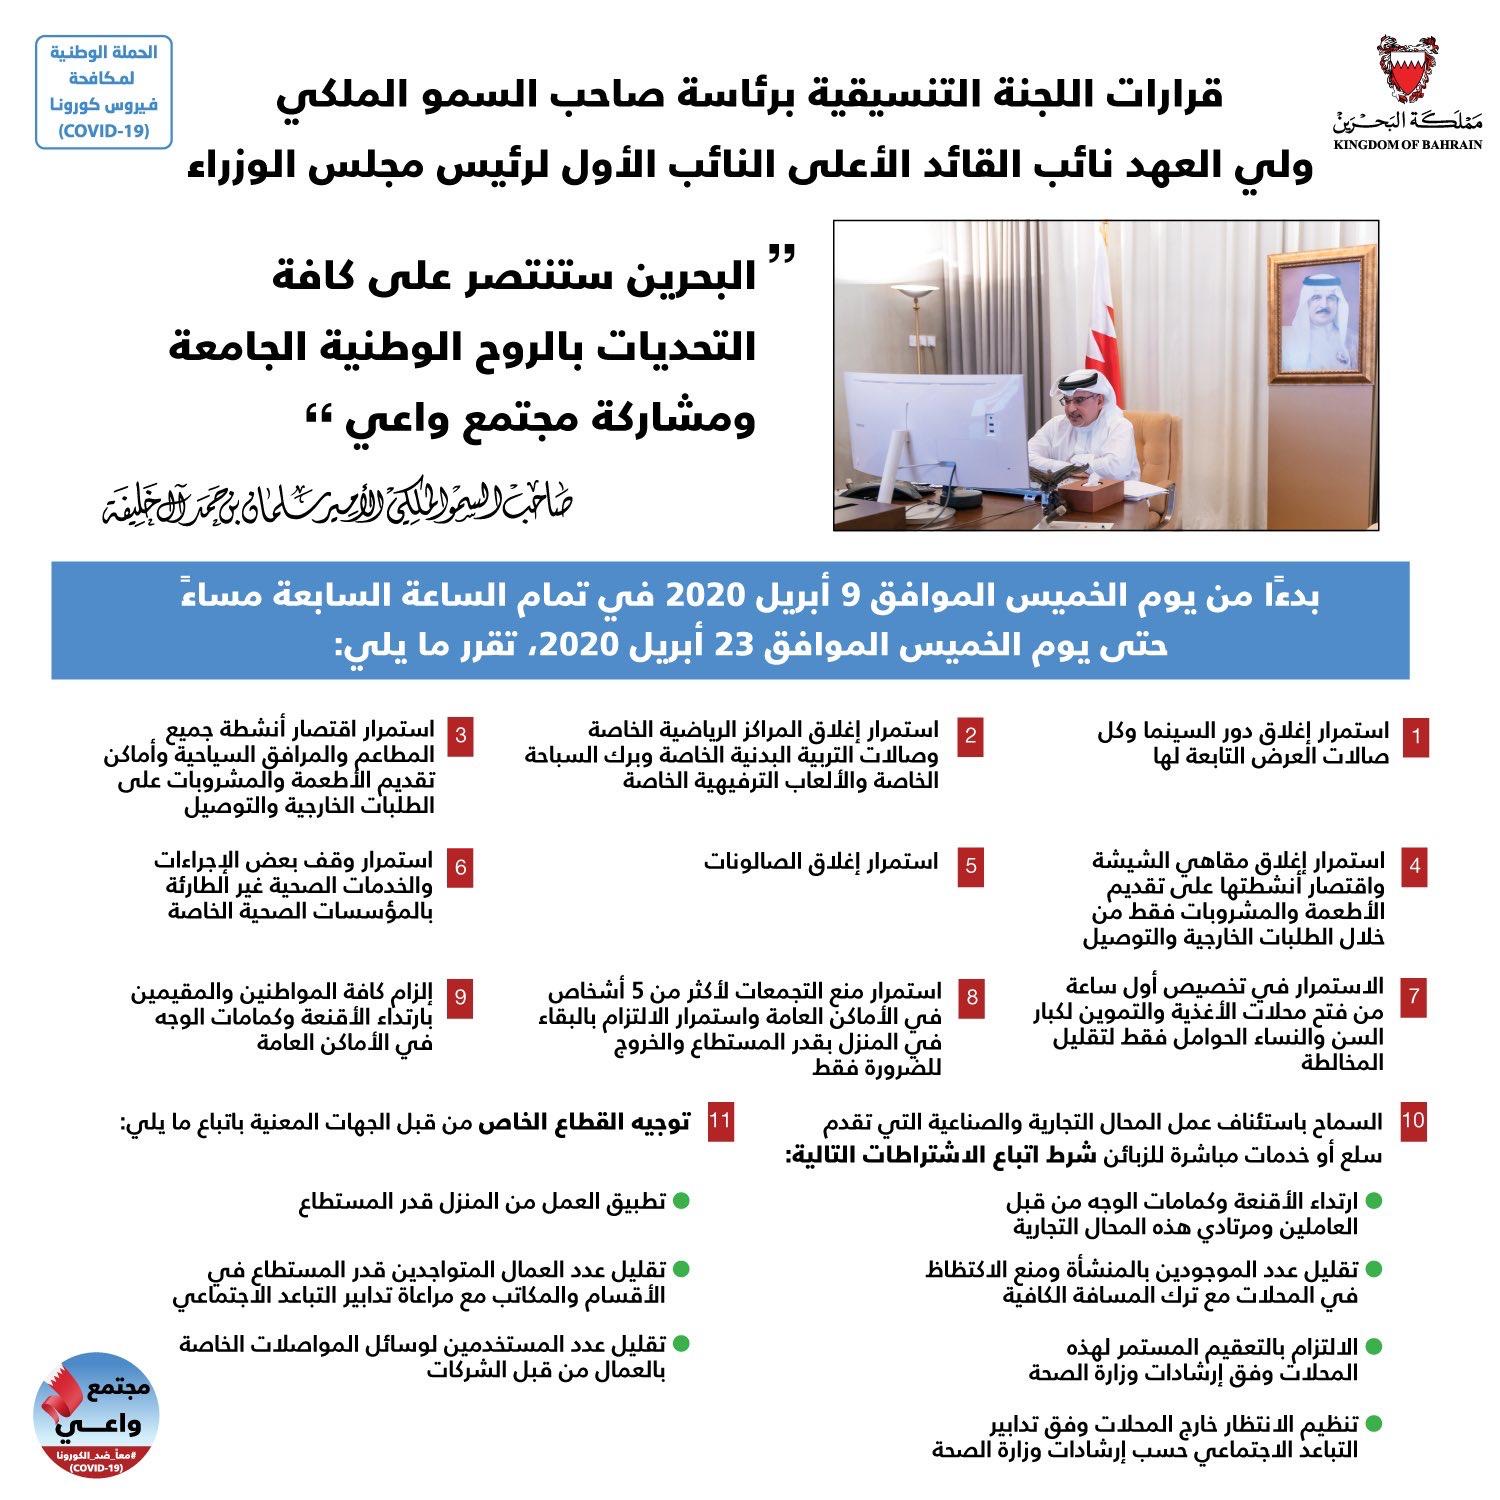 سمو ولي العهد: البحرين ستنتصر على كافة التحديات بالروح الوطنية الجامعة ومشاركة مجتمع واعي